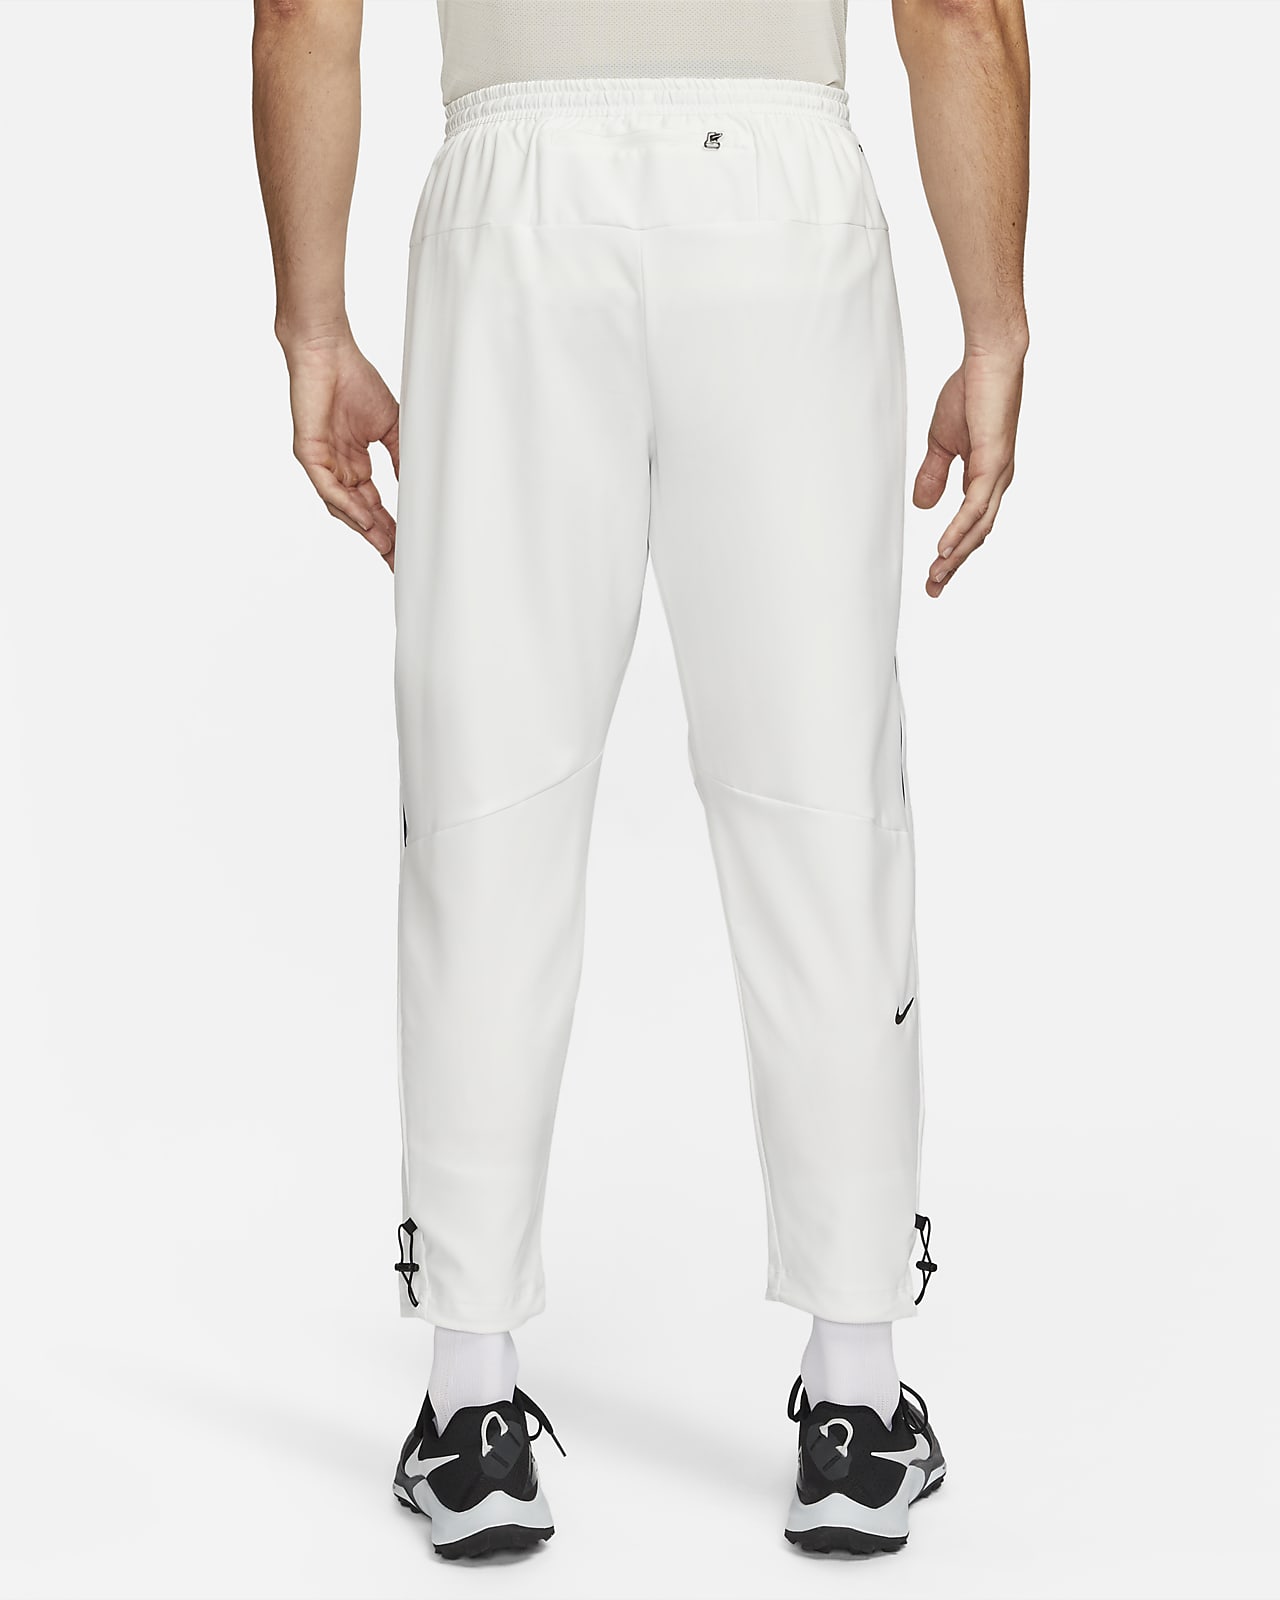 Nike Big & Tall Dri-fit Essential Woven Pocket Running Pants